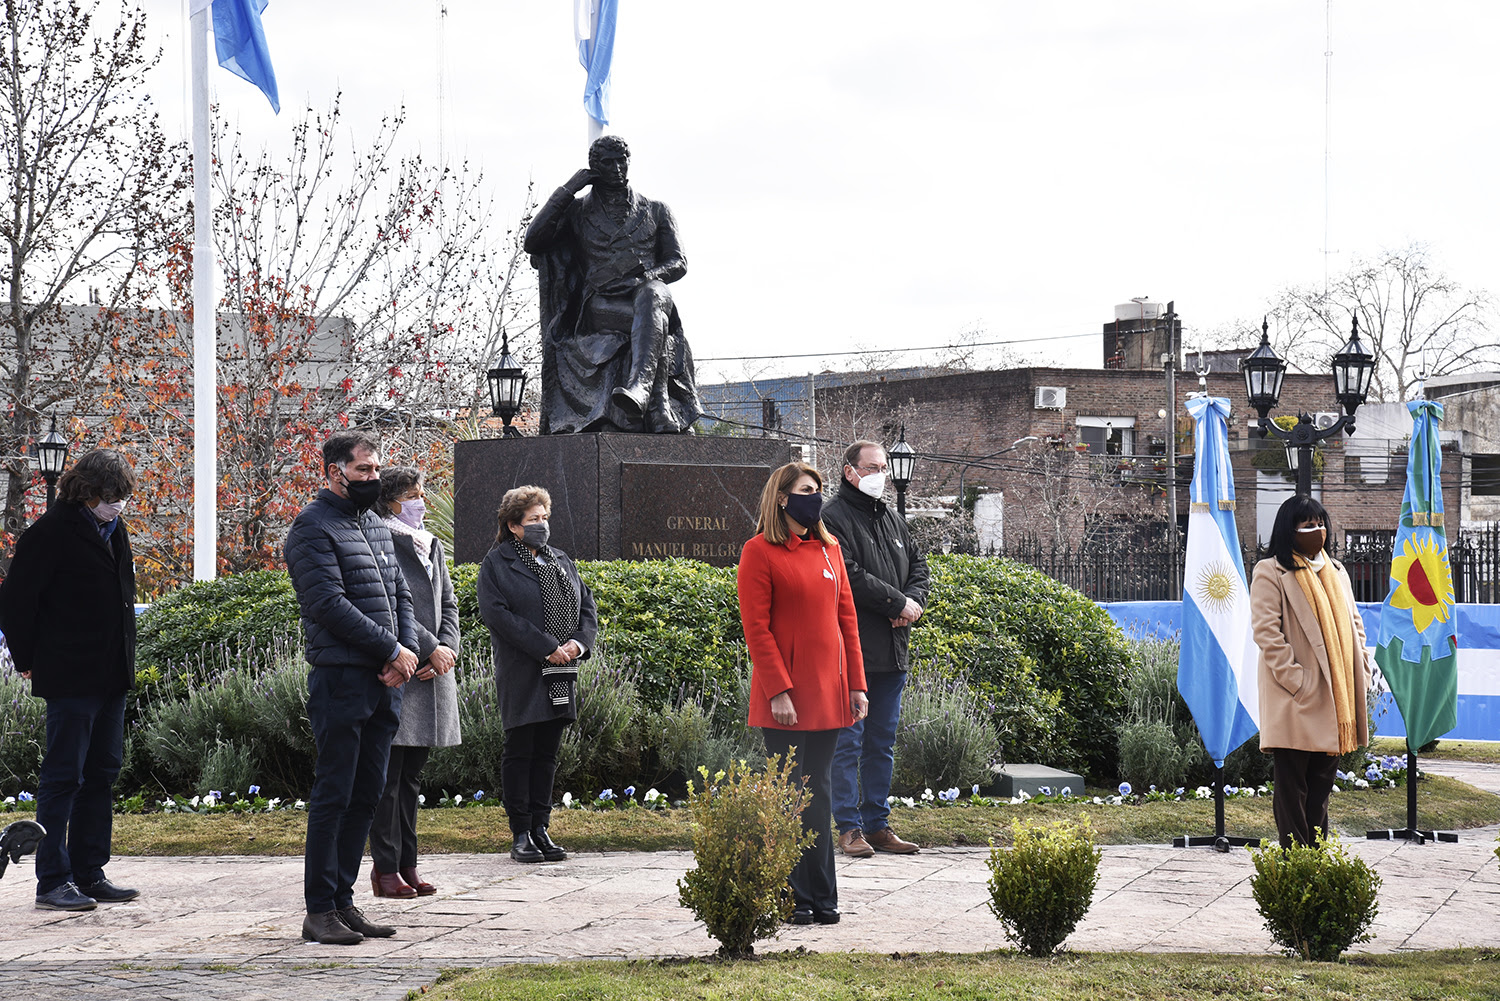 Julio y Gisela Zamora acompañaron a estudiantes de Tigre en la promesa virtual a la Bandera Nacional